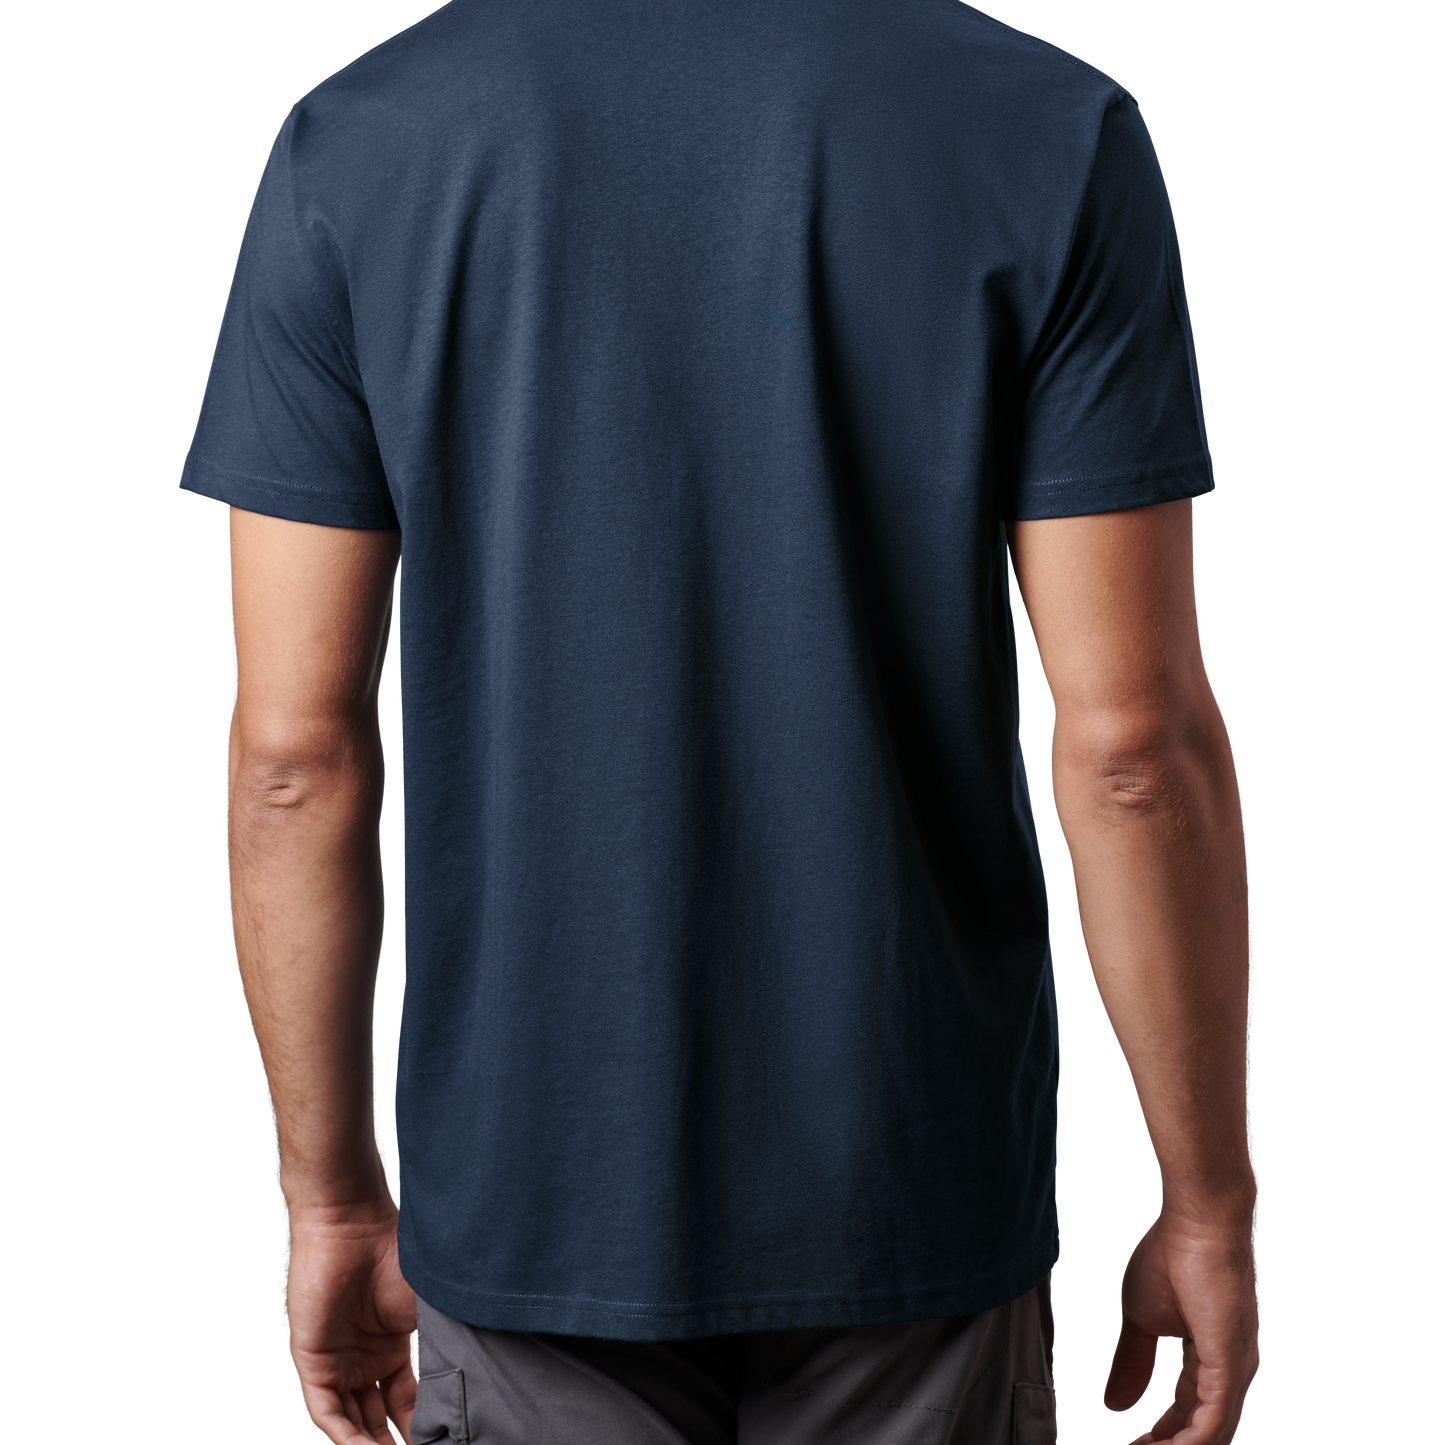 YETI Kurzarm-T-Shirt in Premiumqualität mit Tasche Navy